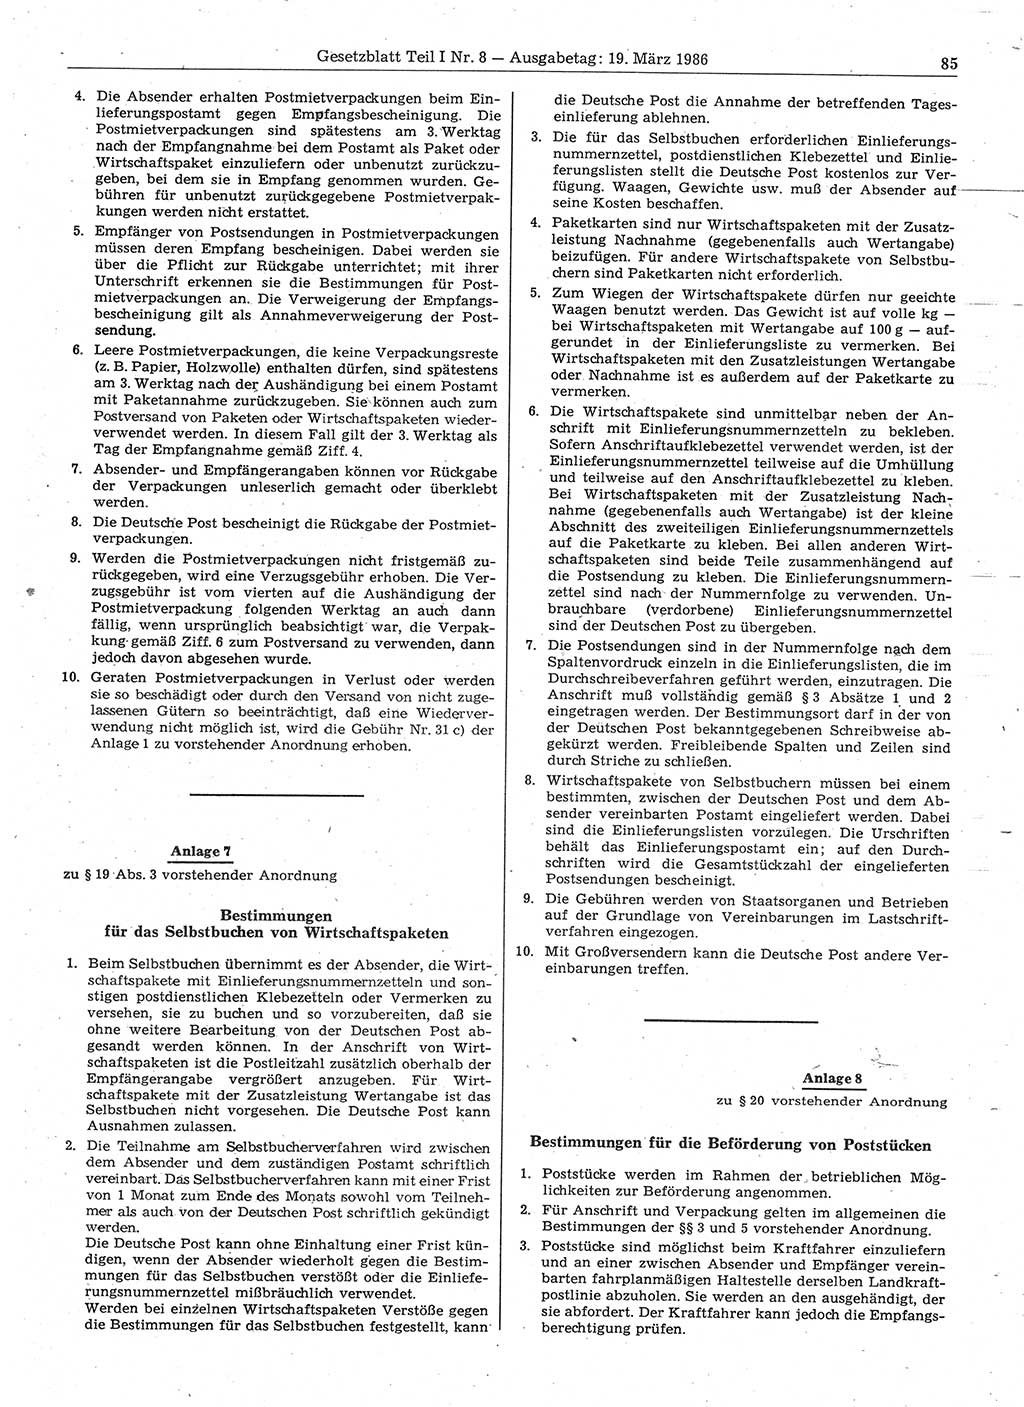 Gesetzblatt (GBl.) der Deutschen Demokratischen Republik (DDR) Teil Ⅰ 1986, Seite 85 (GBl. DDR Ⅰ 1986, S. 85)